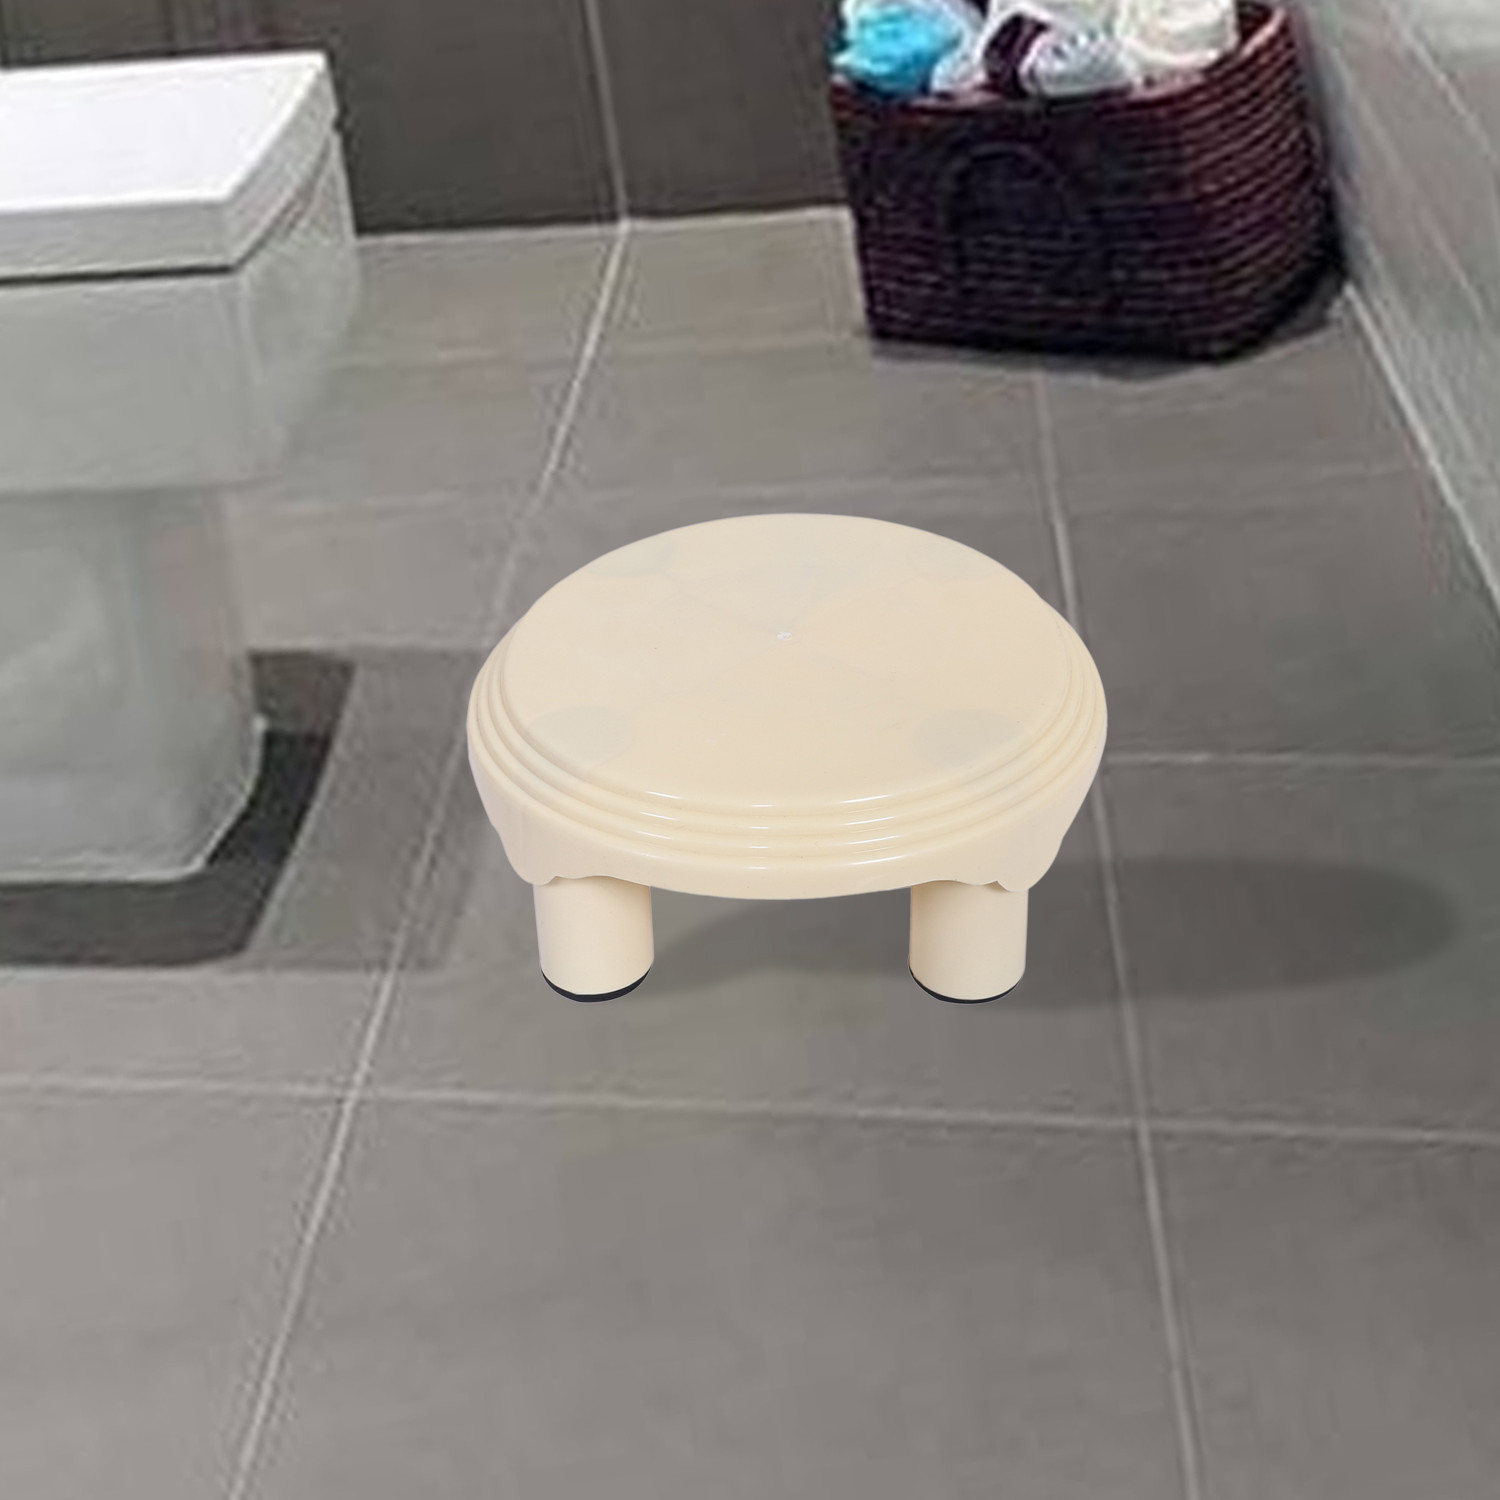 Kuber Industries Bathroom Stool|Plastic Stool|Anti-slip Bathing Stool|Stool for Senior Citizen|Patla for Bathroom|Pack of 2 (Mint Green & Cream)